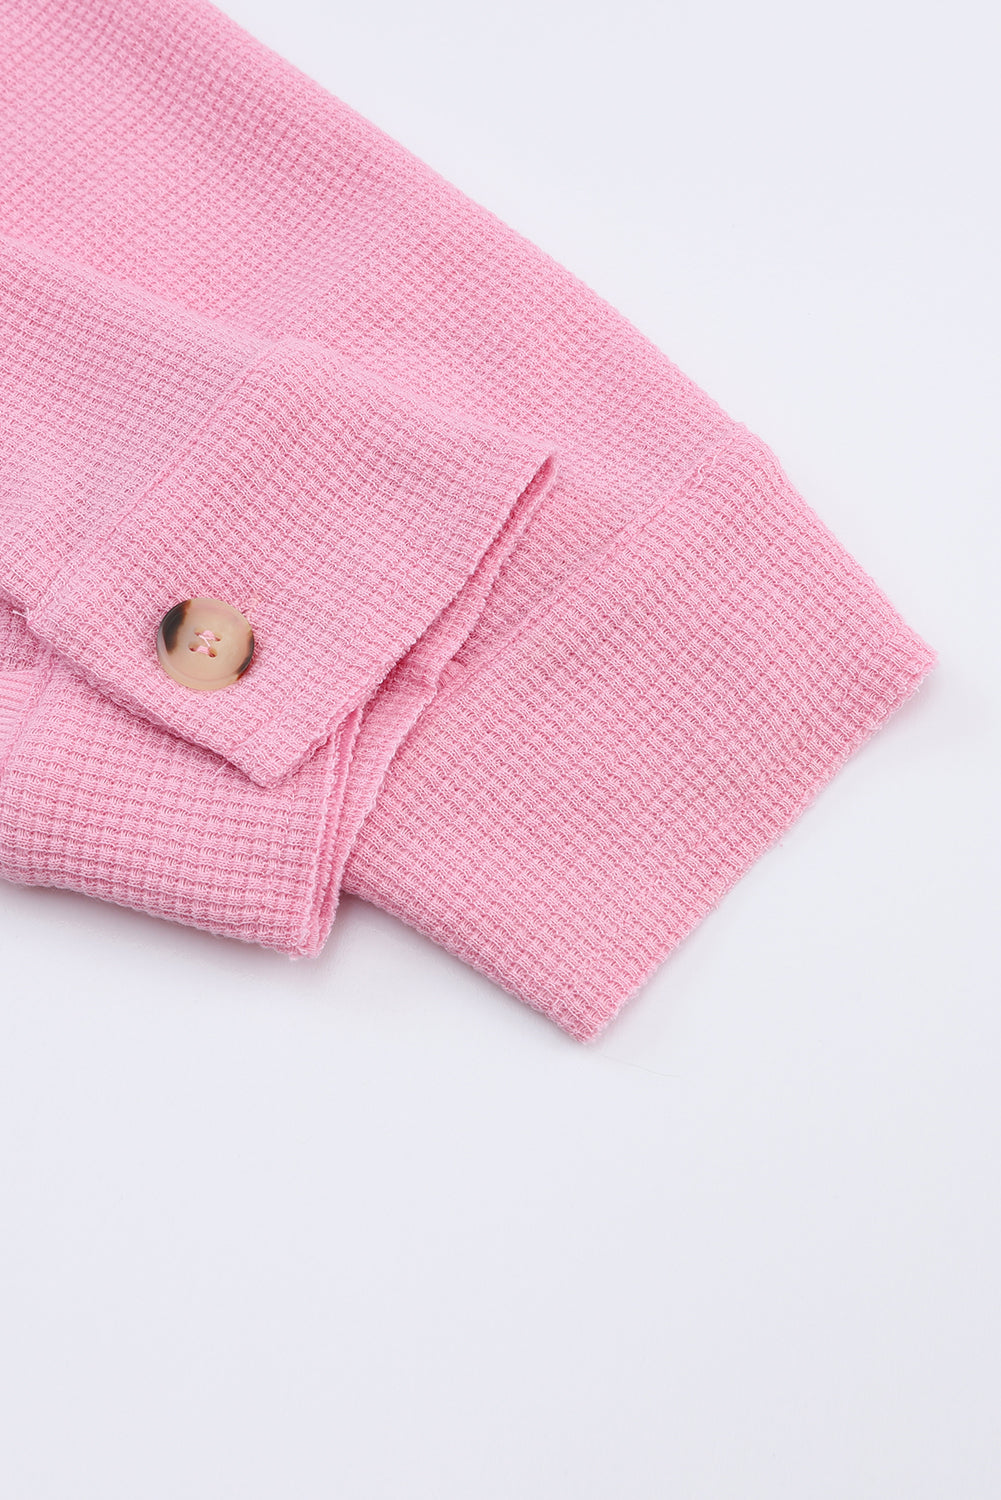 Rosafarbenes Plus-Size-Hemd aus Waffelstrick mit sichtbaren Nähten